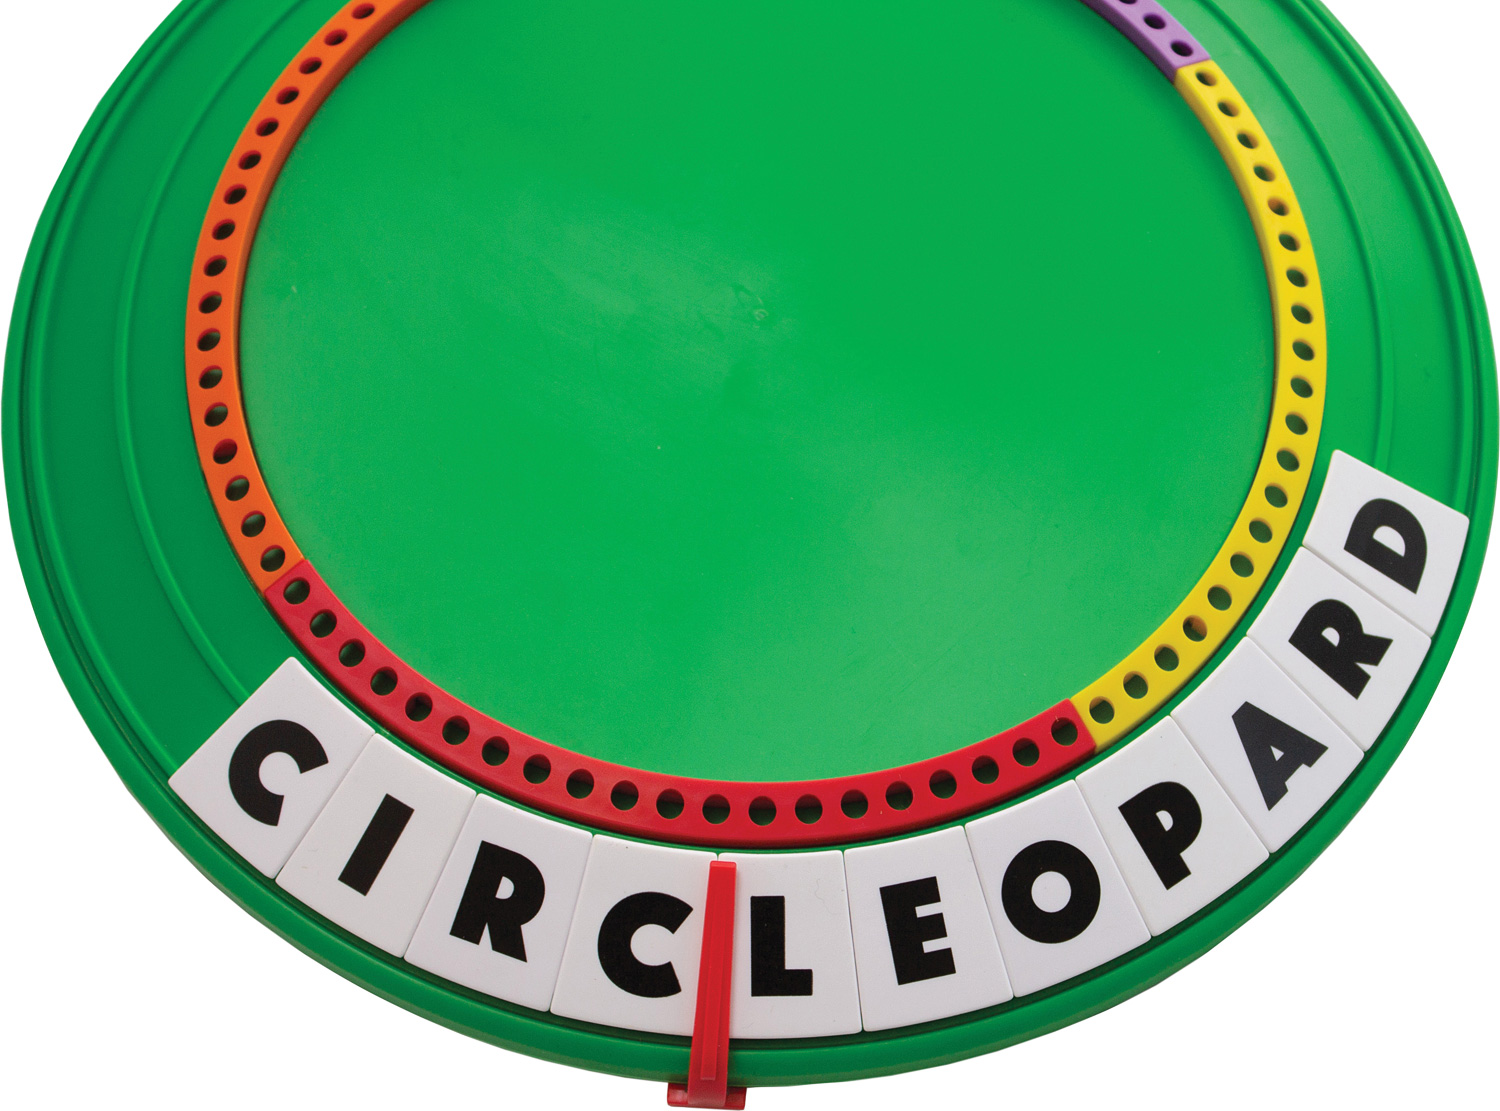 Full Circle Game